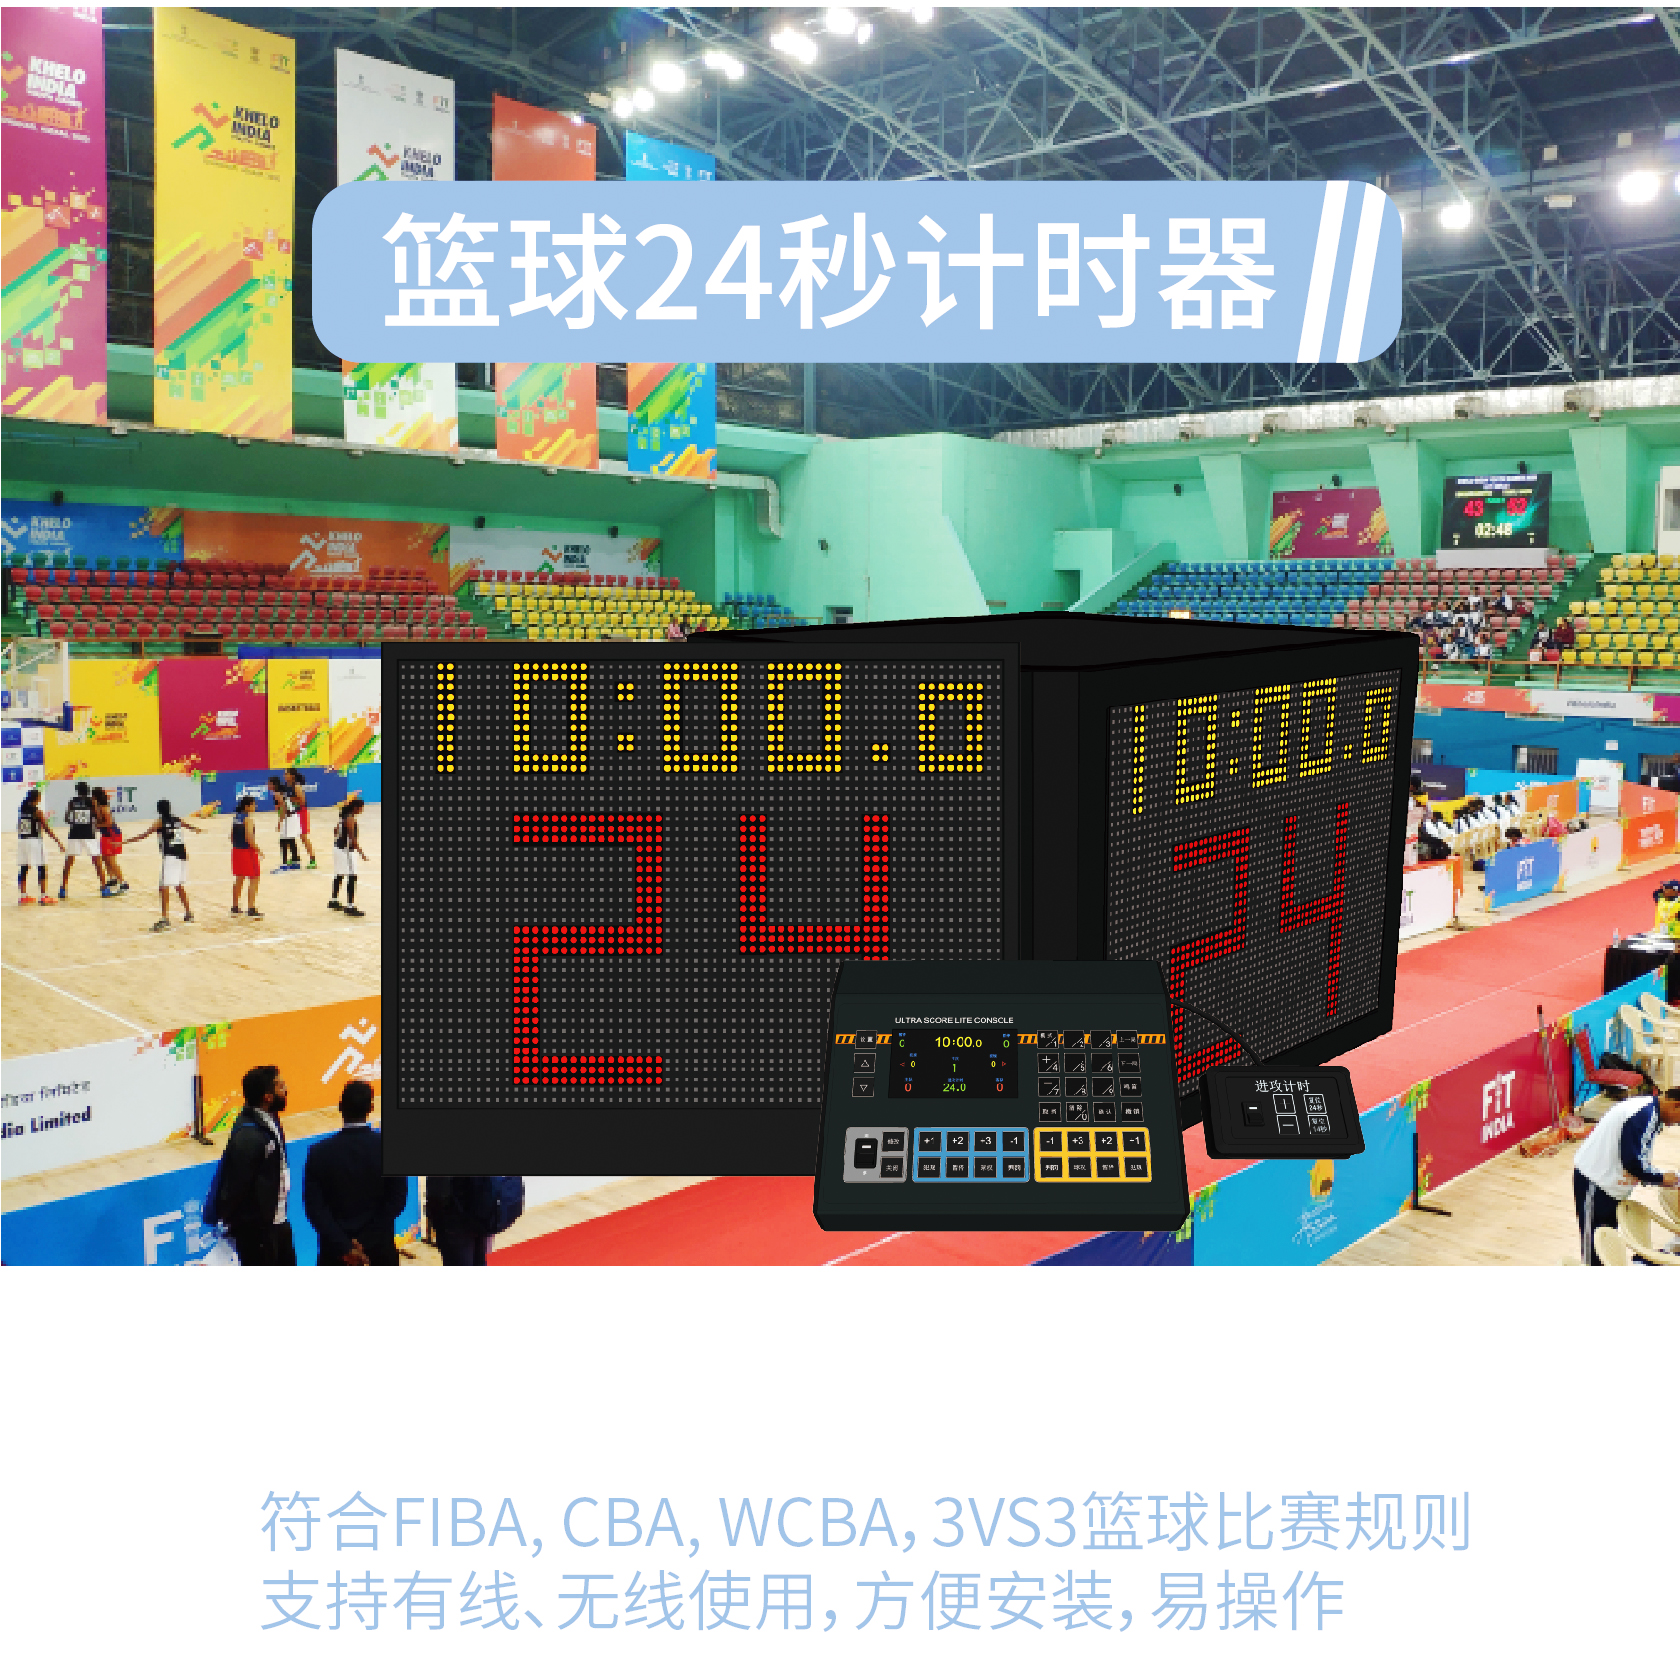 籃球24秒計時器/金陵24秒/籃球單面24秒計時器 (FIBA 2020 新規)/籃球單面24秒計時器 (內置燈帶)/籃球四面24秒計時器 (FIBA 2020 新規)/籃球雙面透明24秒計時器